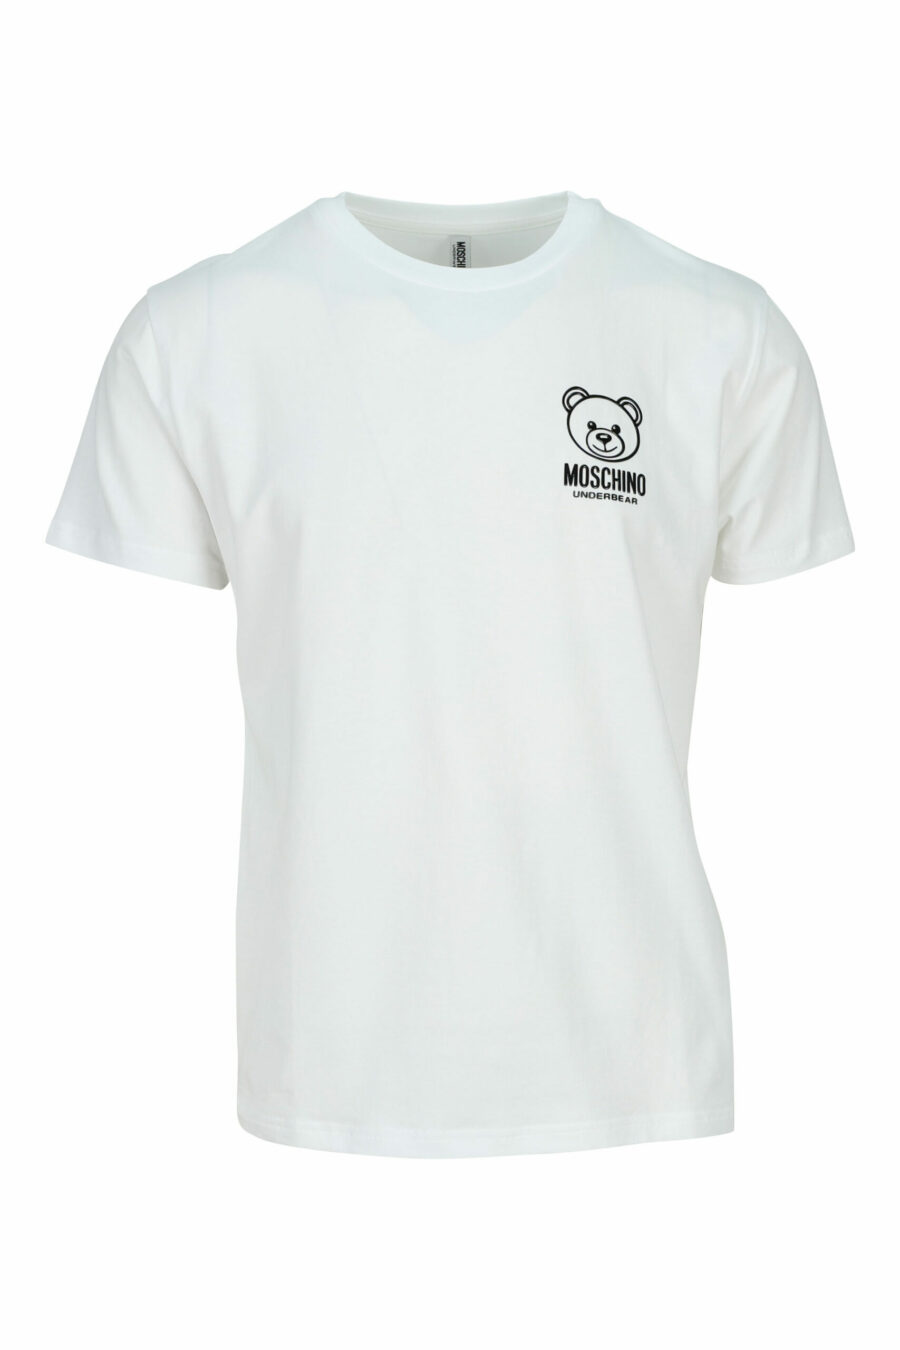 Weißes T-Shirt mit Mini-Logo Bär "underbear" in schwarzem Gummi - 667113602585 skaliert